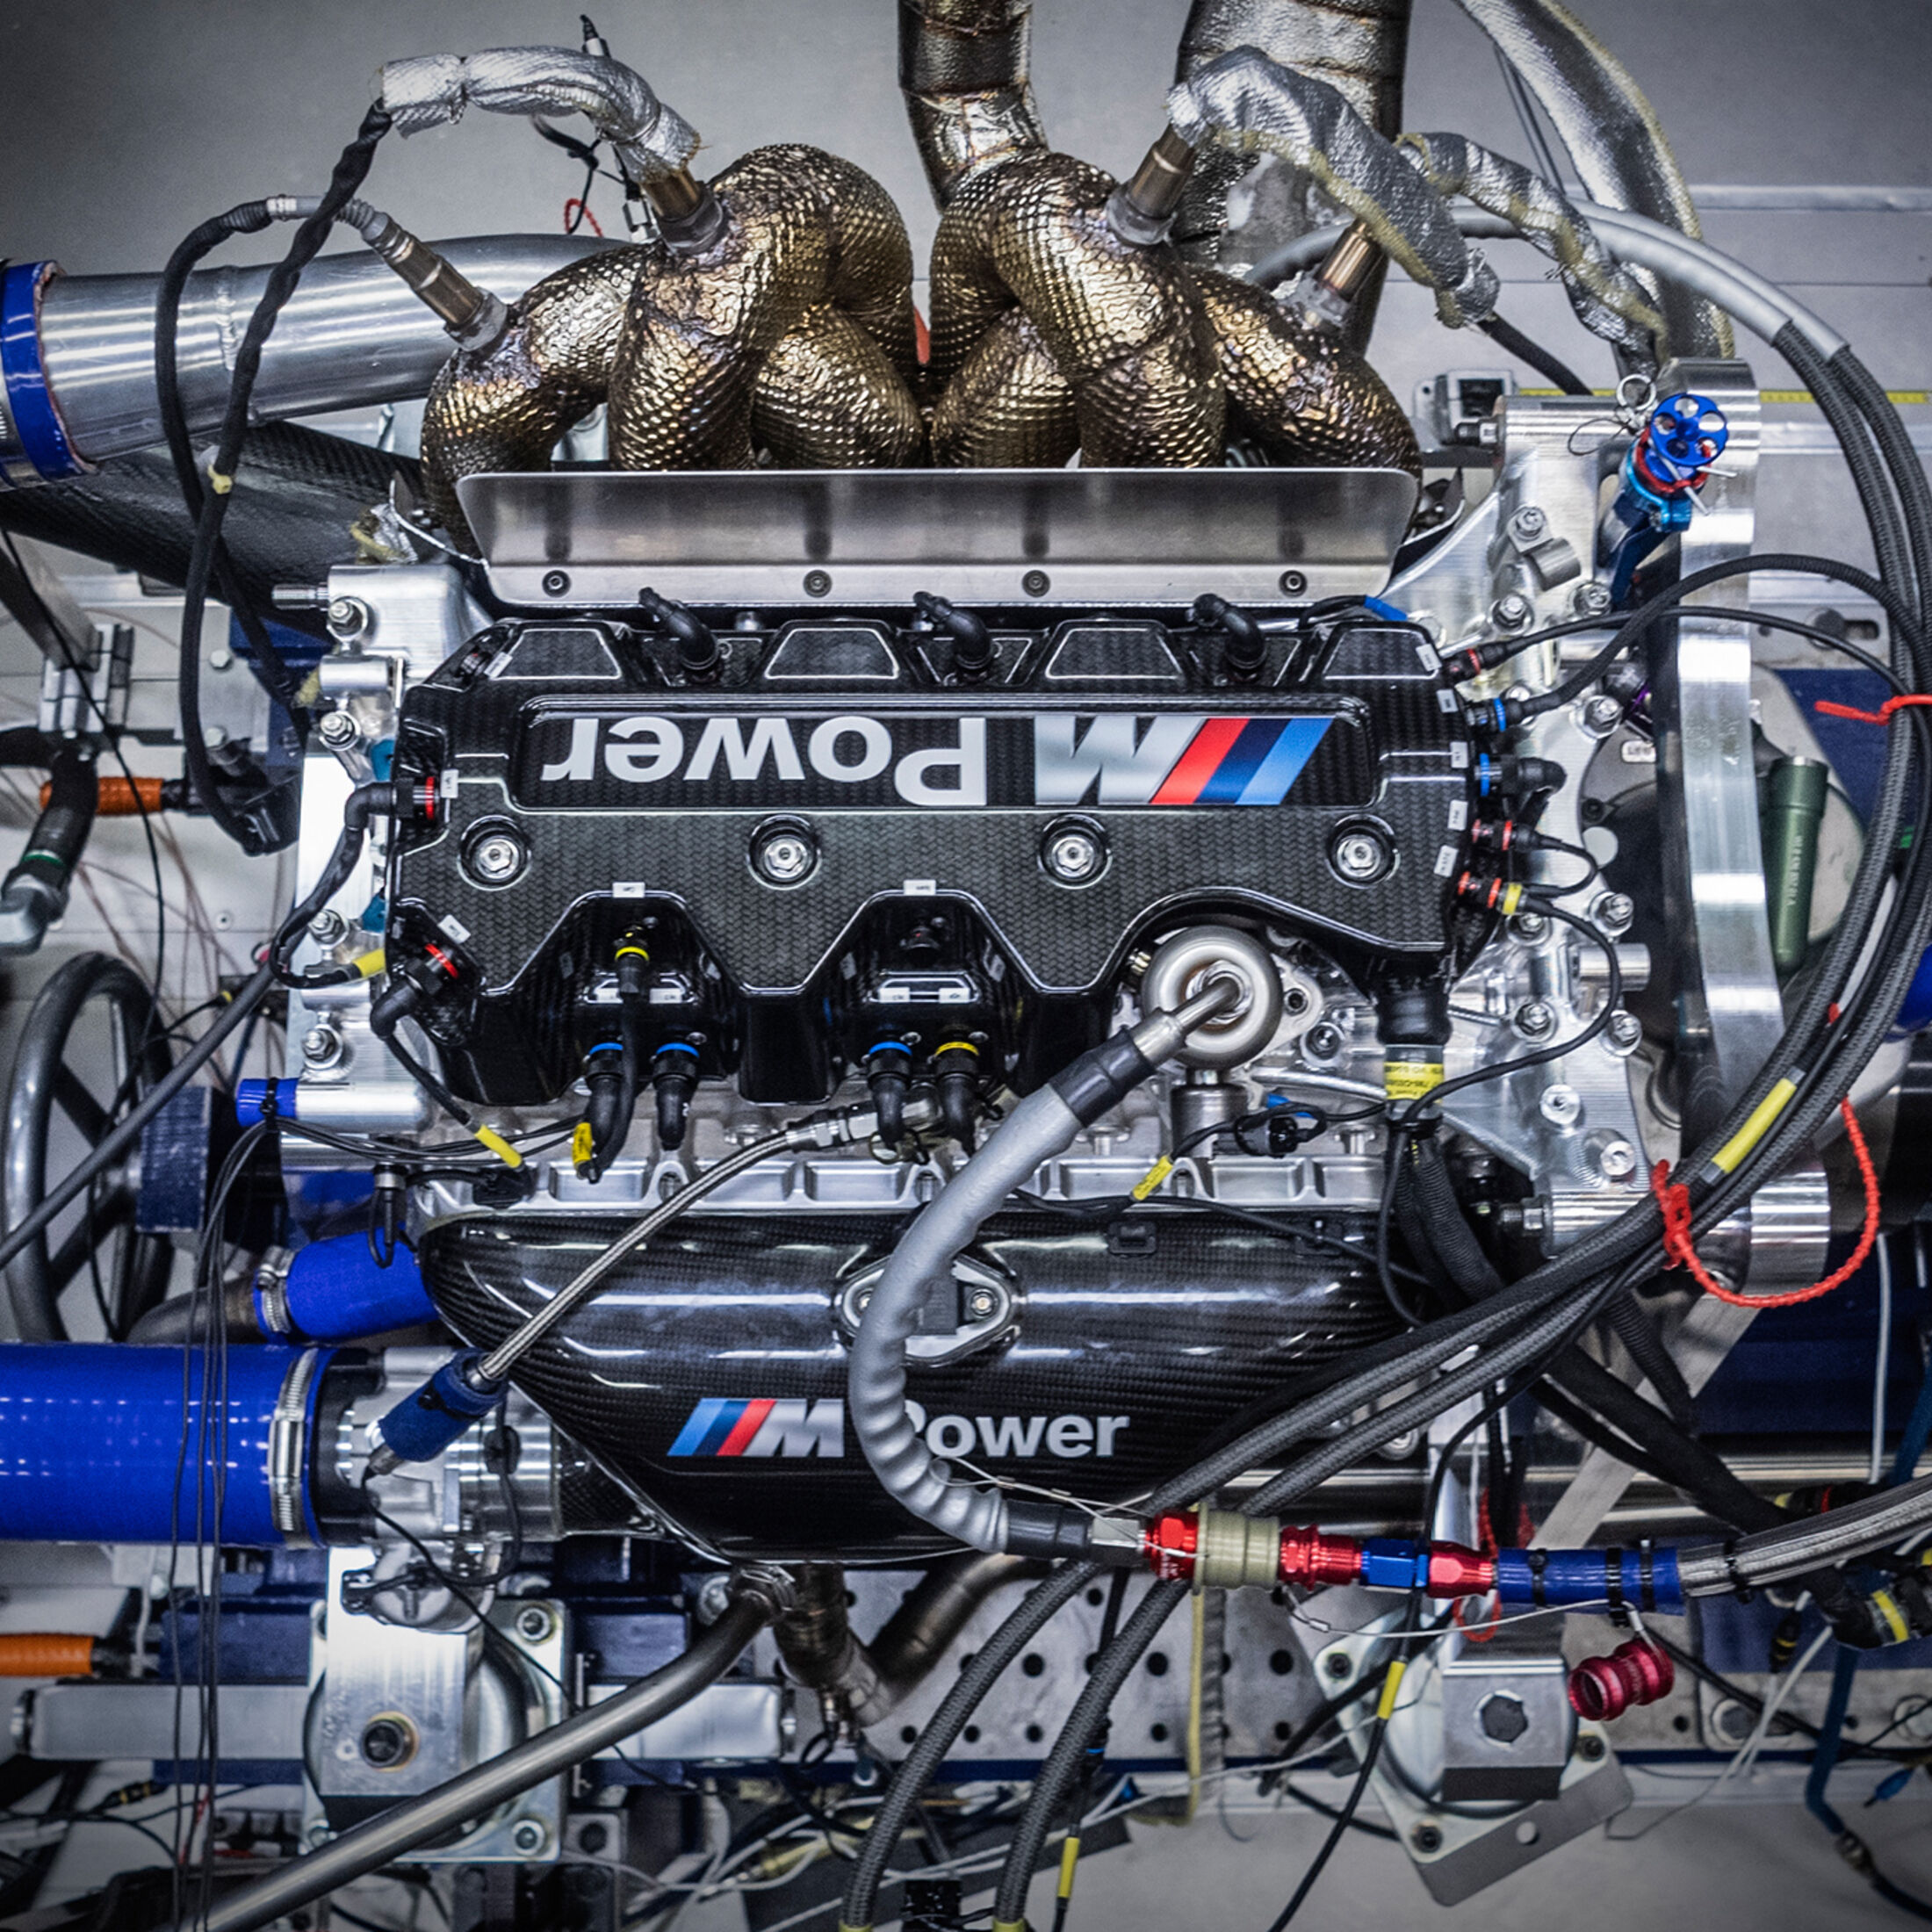 BMW feiert 50 Jahre Turbo-Motoren im Motorsport: Von 280 bis 1.430